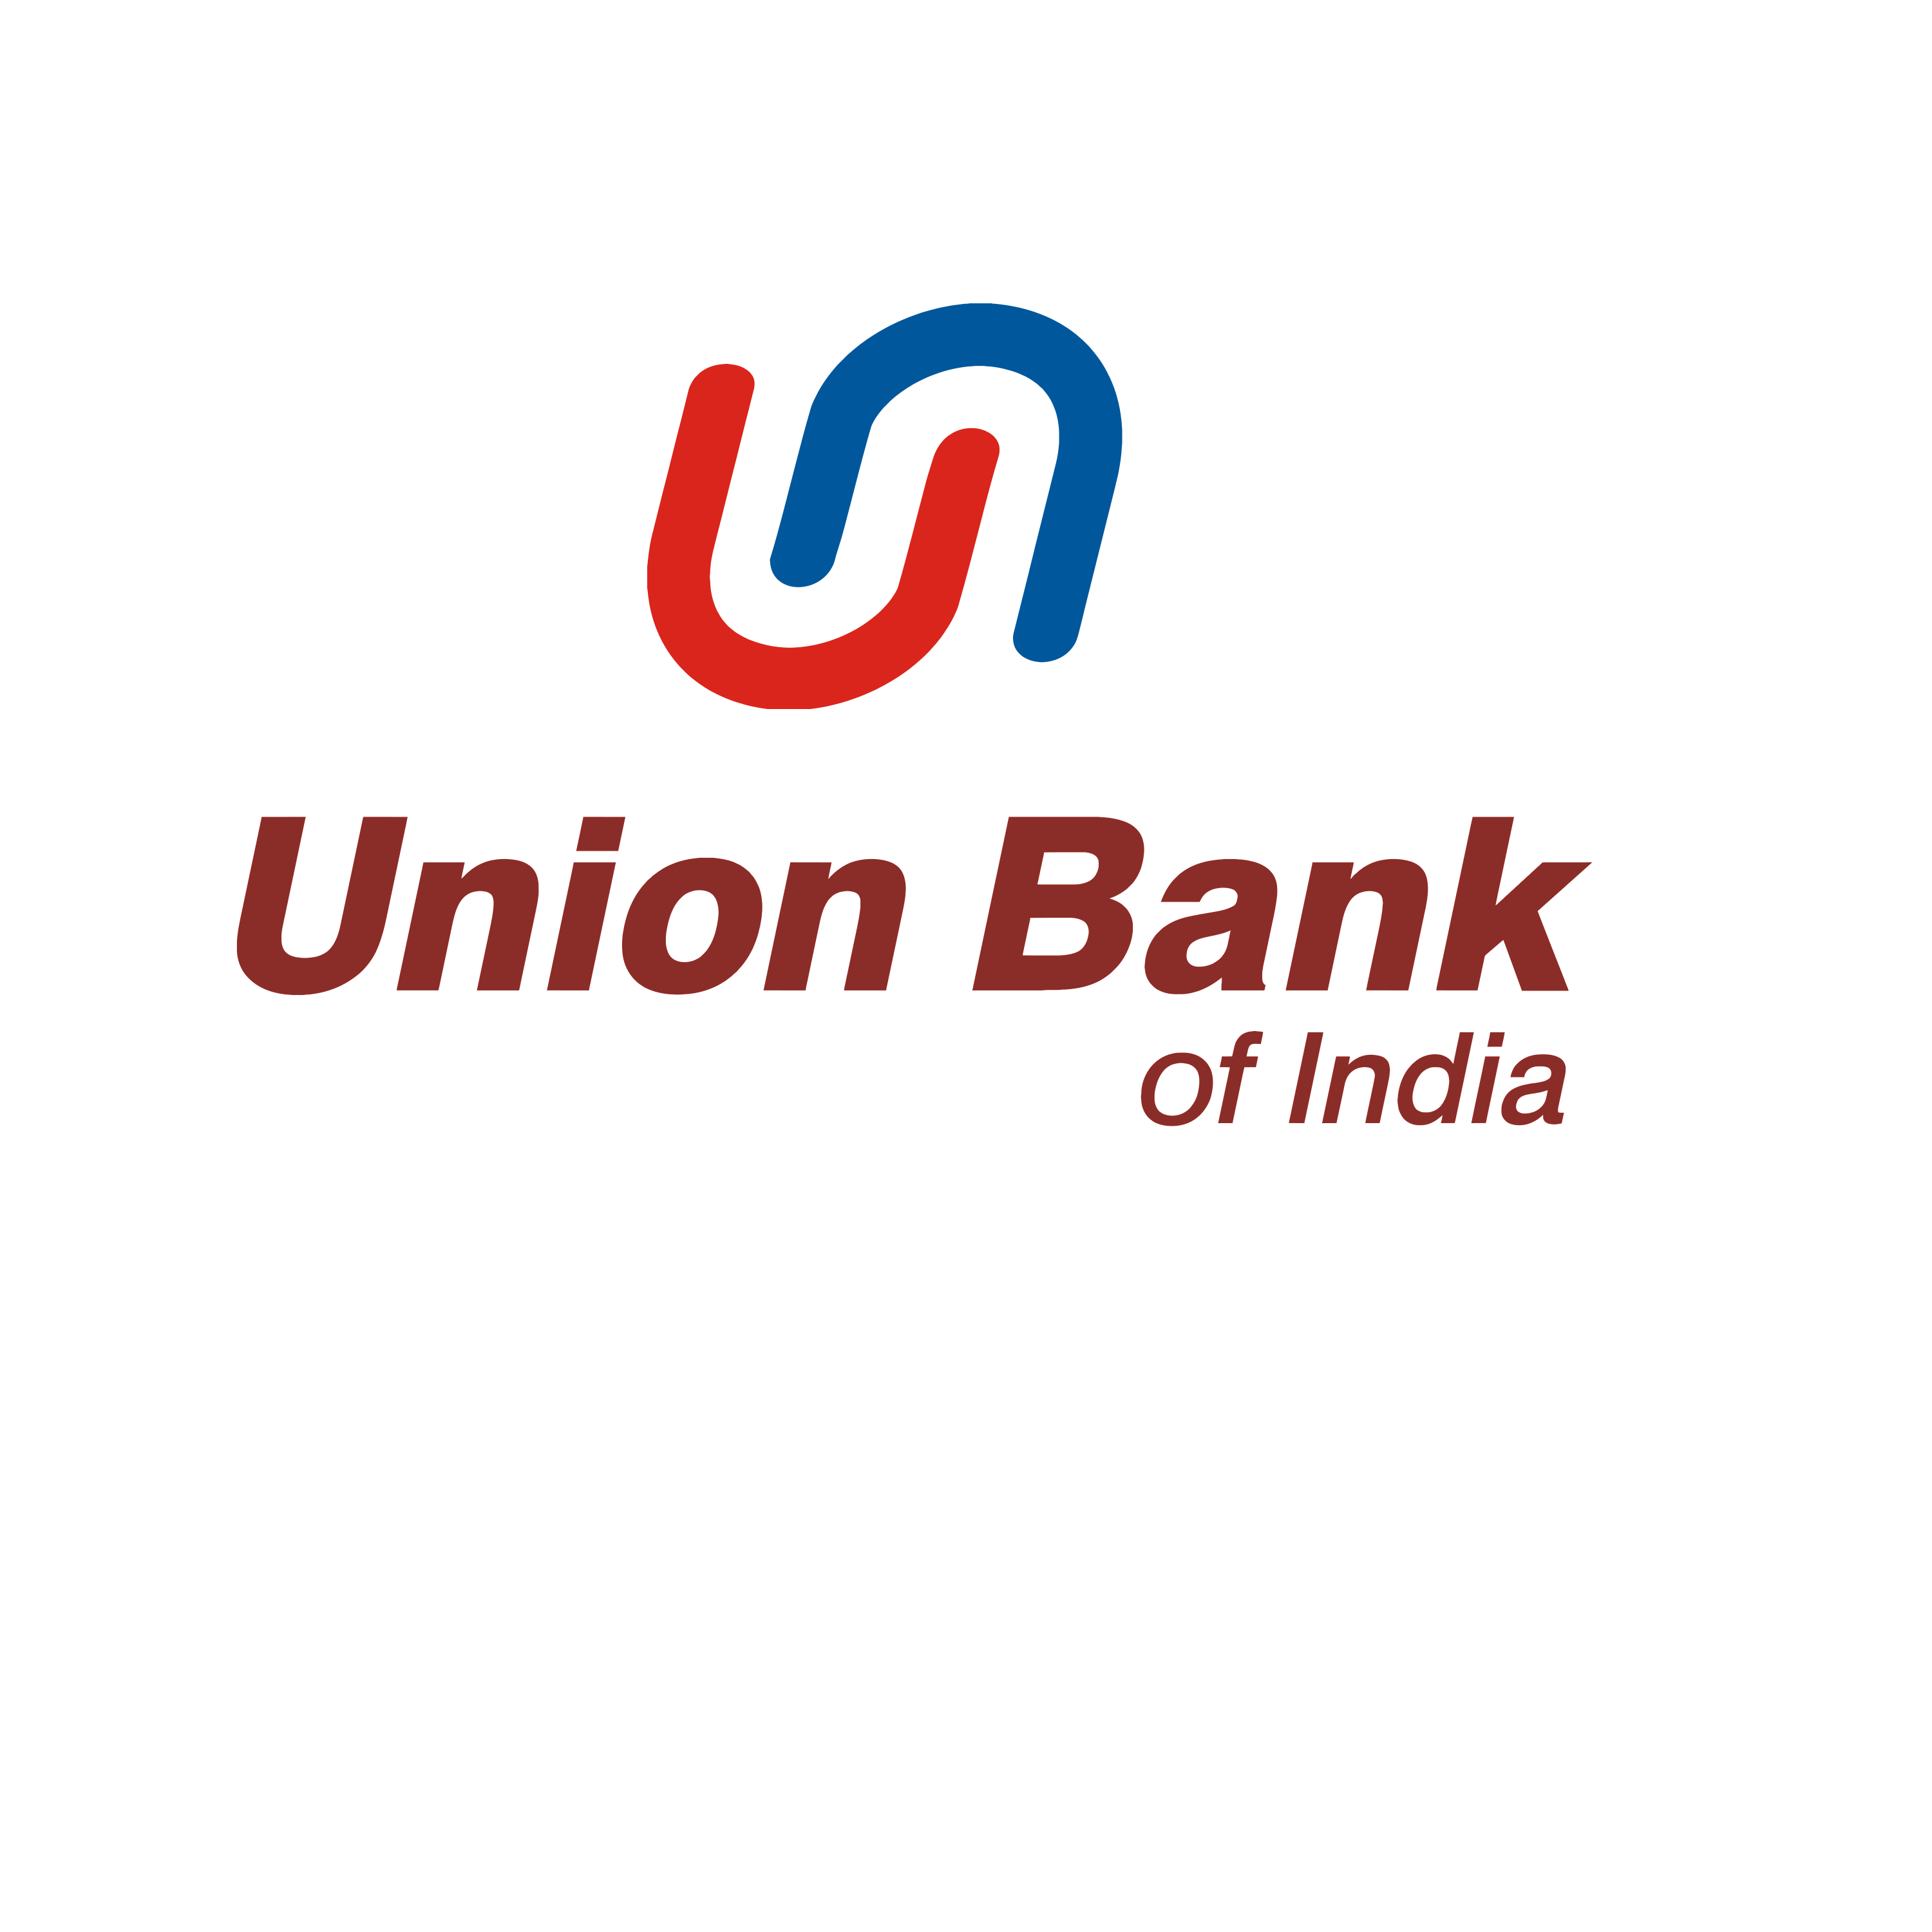 Union Bank Of India Logo Transparent Photo